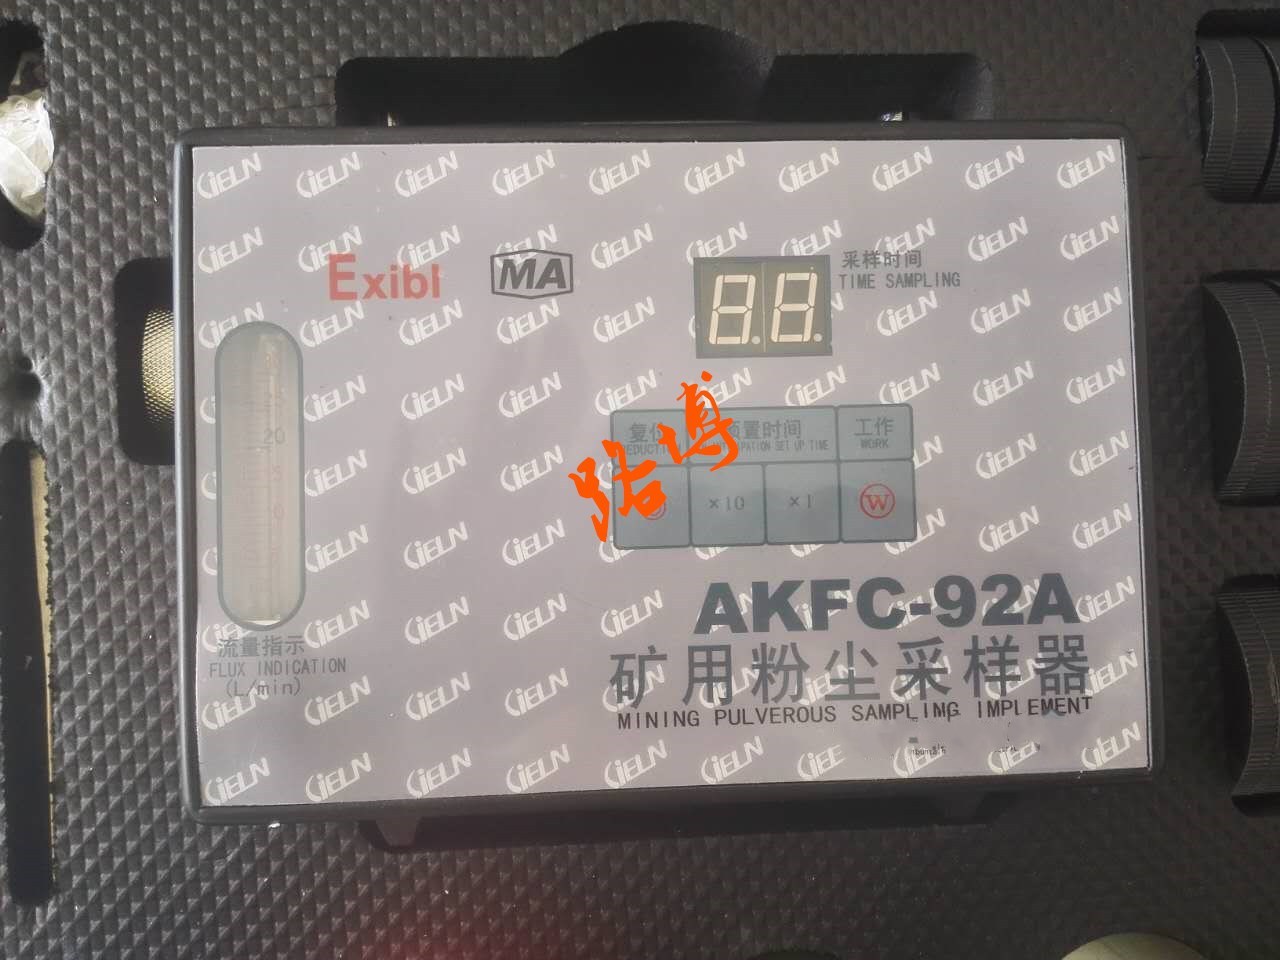 路博AKFC-92A型矿用粉尘采样器